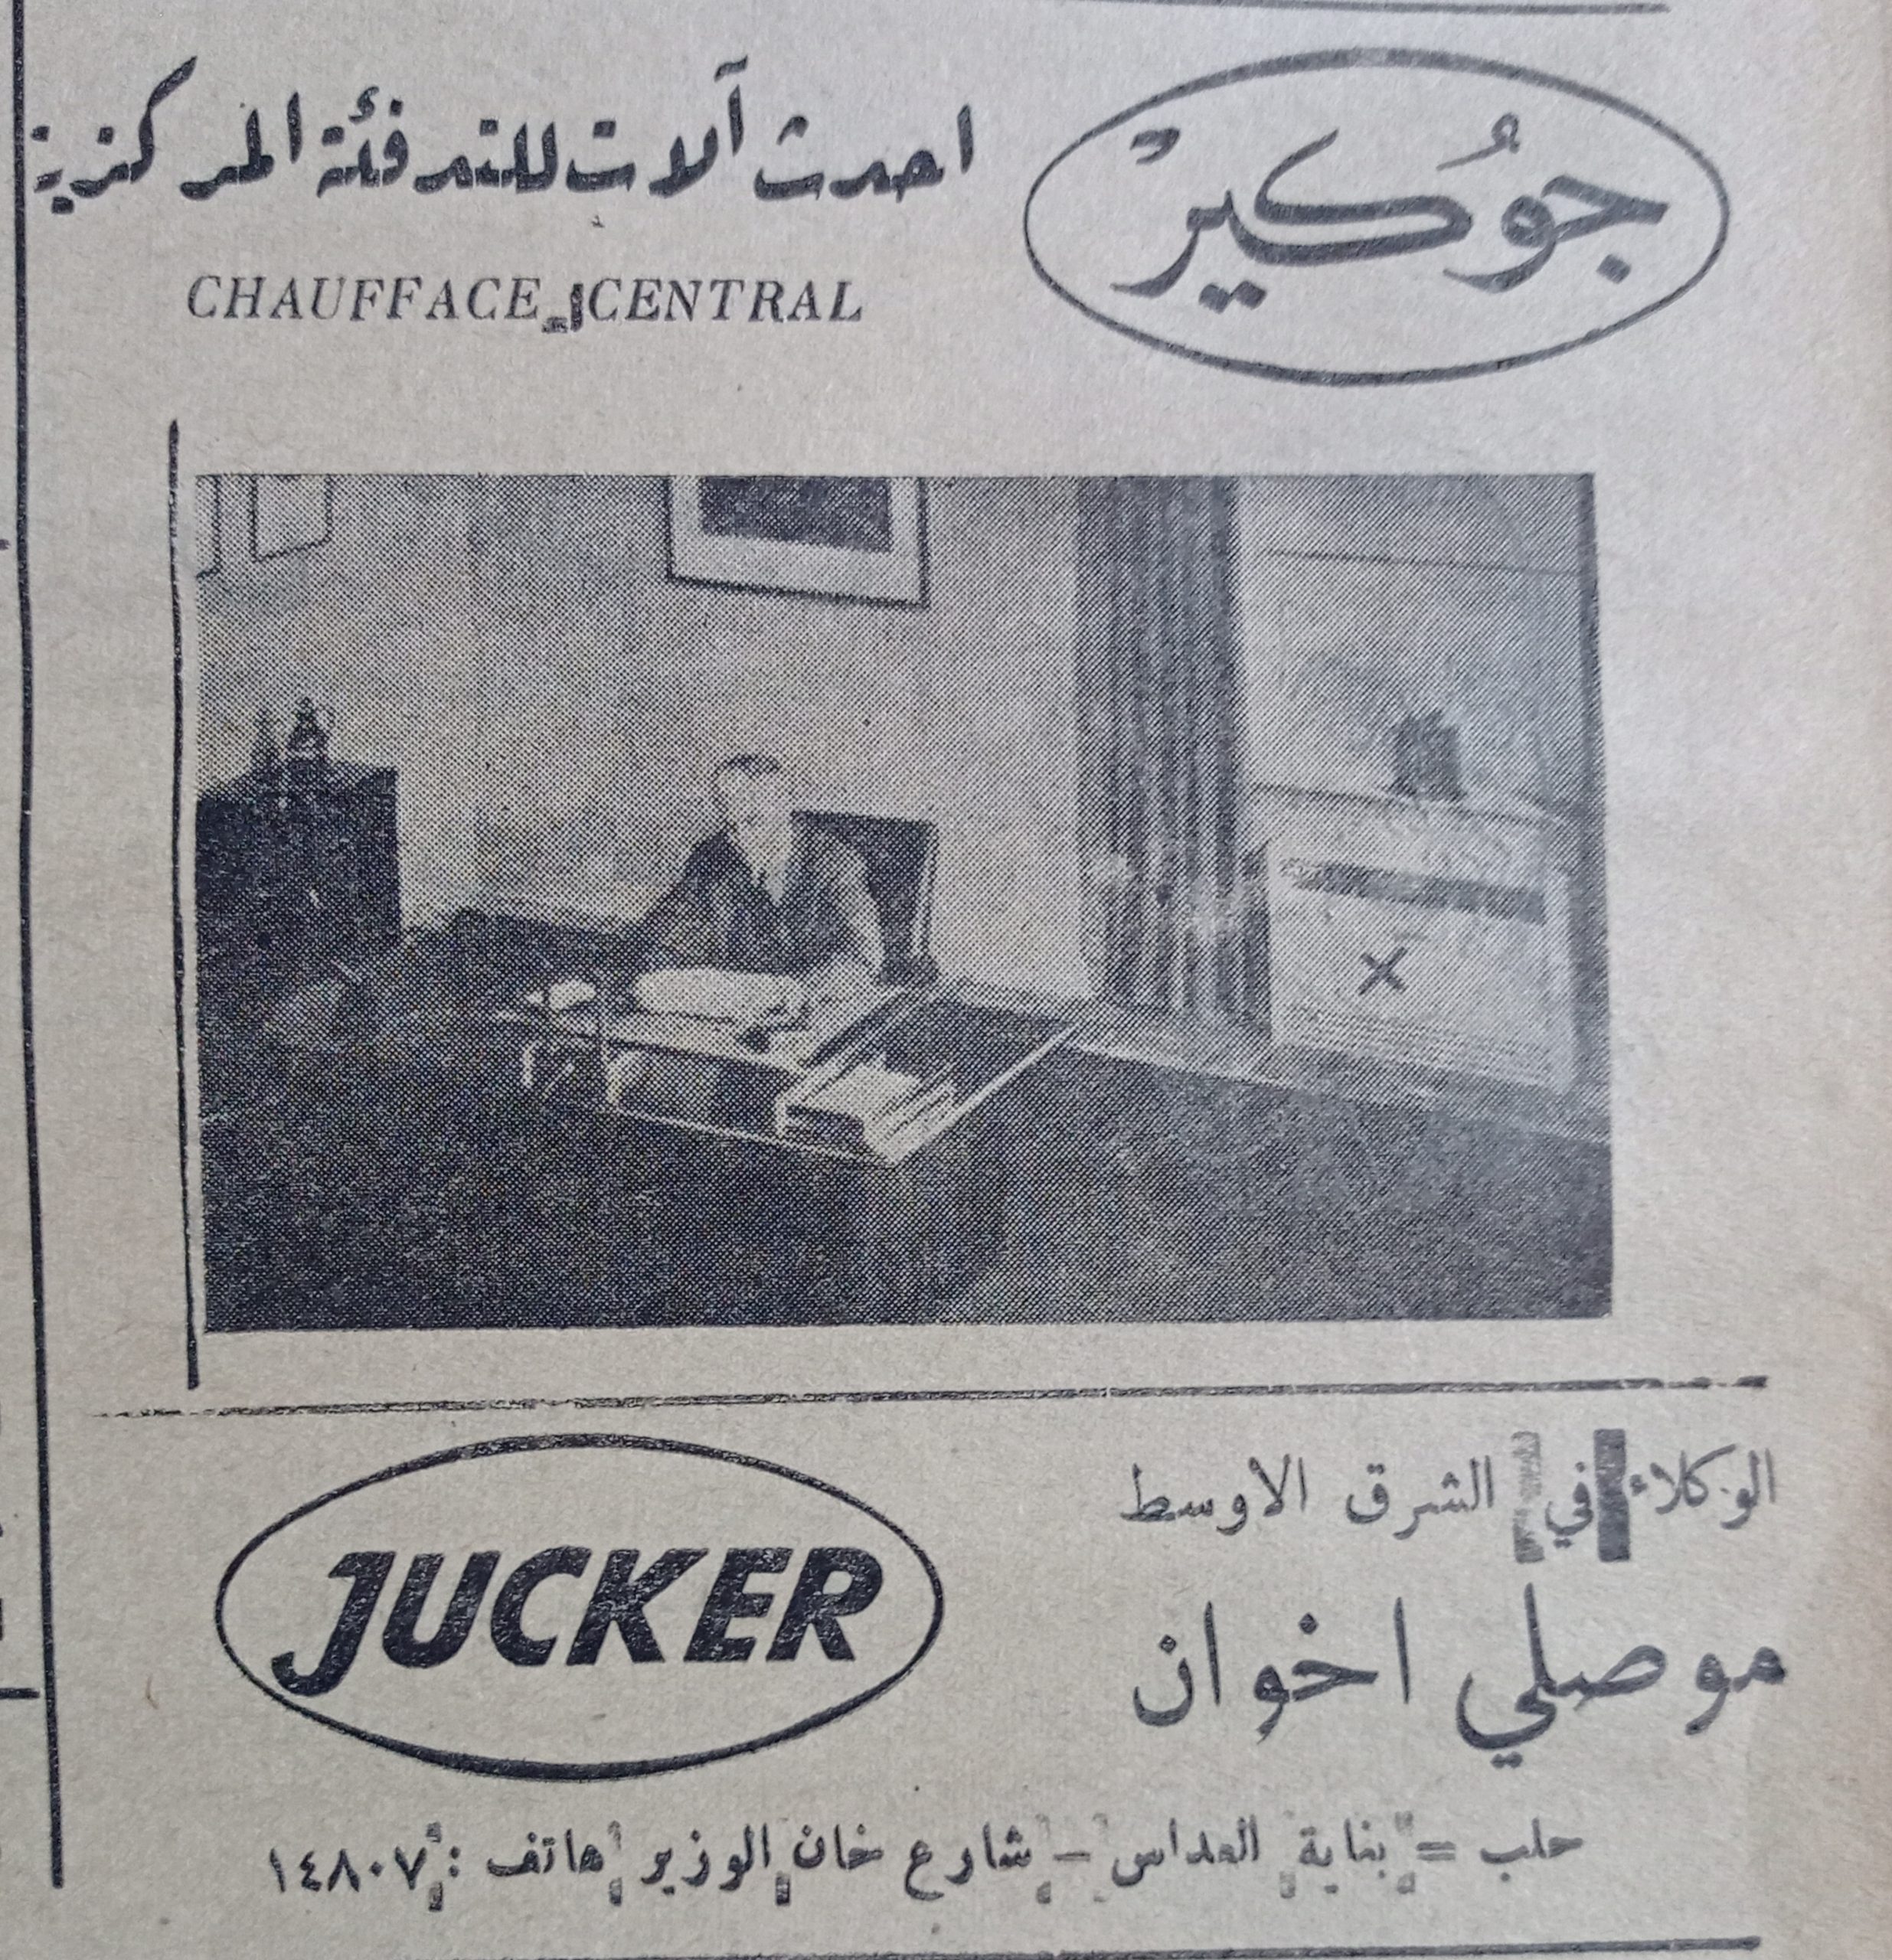 التاريخ السوري المعاصر - إعلان عن آلات التدفئة المركزية (جوكير) في حلب عام 1956